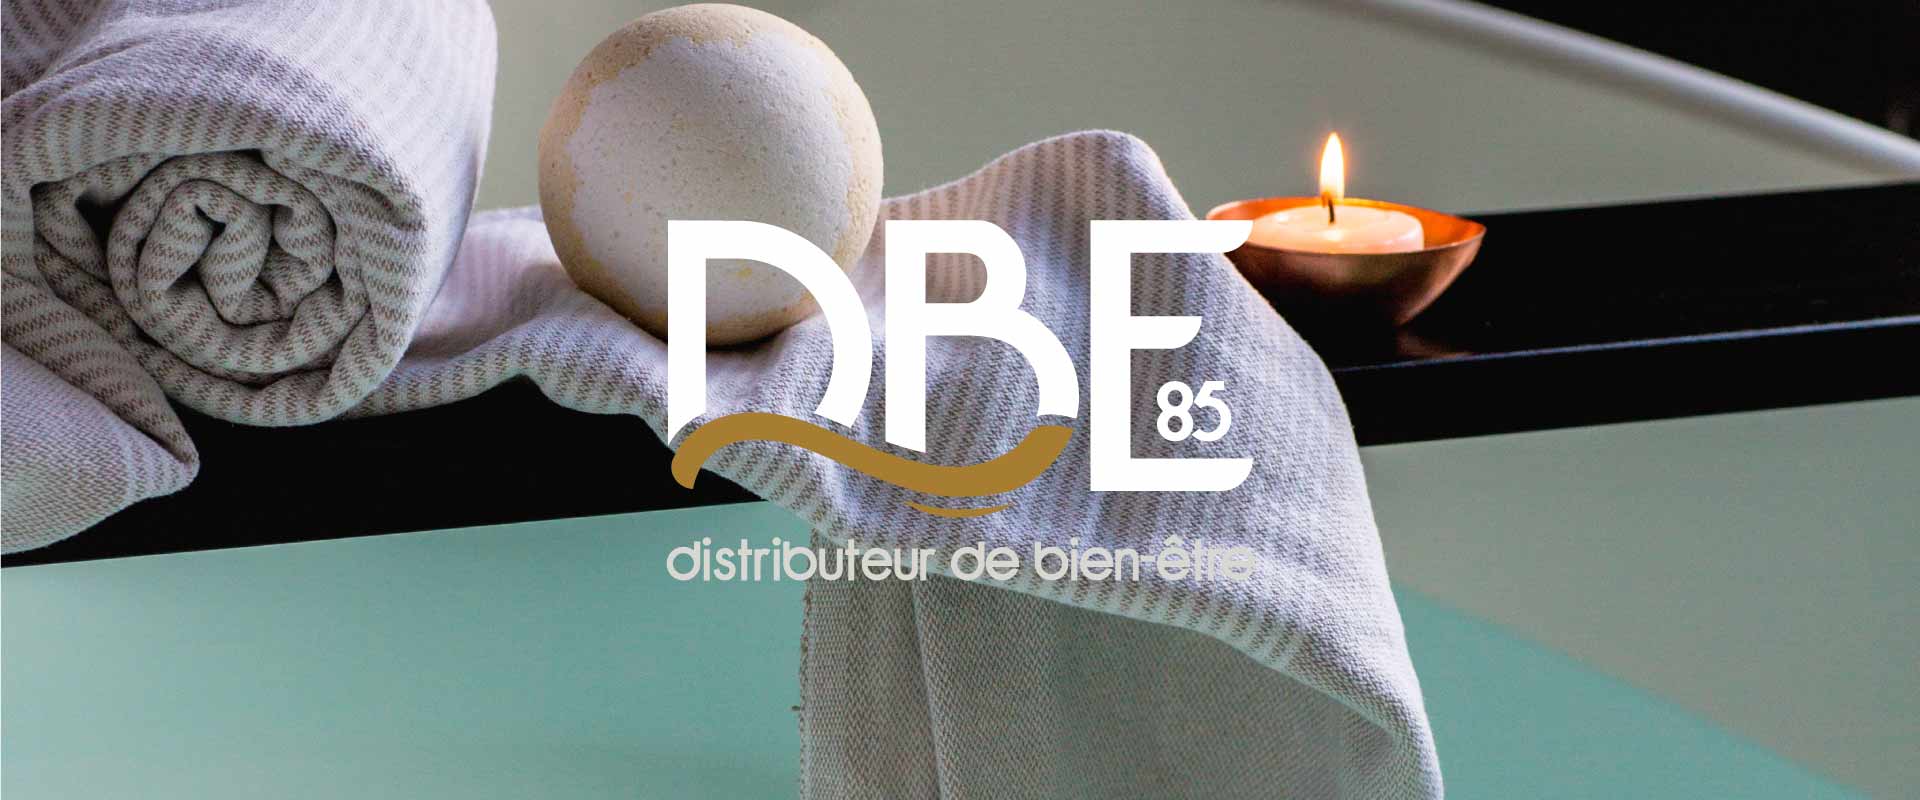 DBE85 logo identite visuelle site internet agence owmel saint gilles croix de vie vendee 8